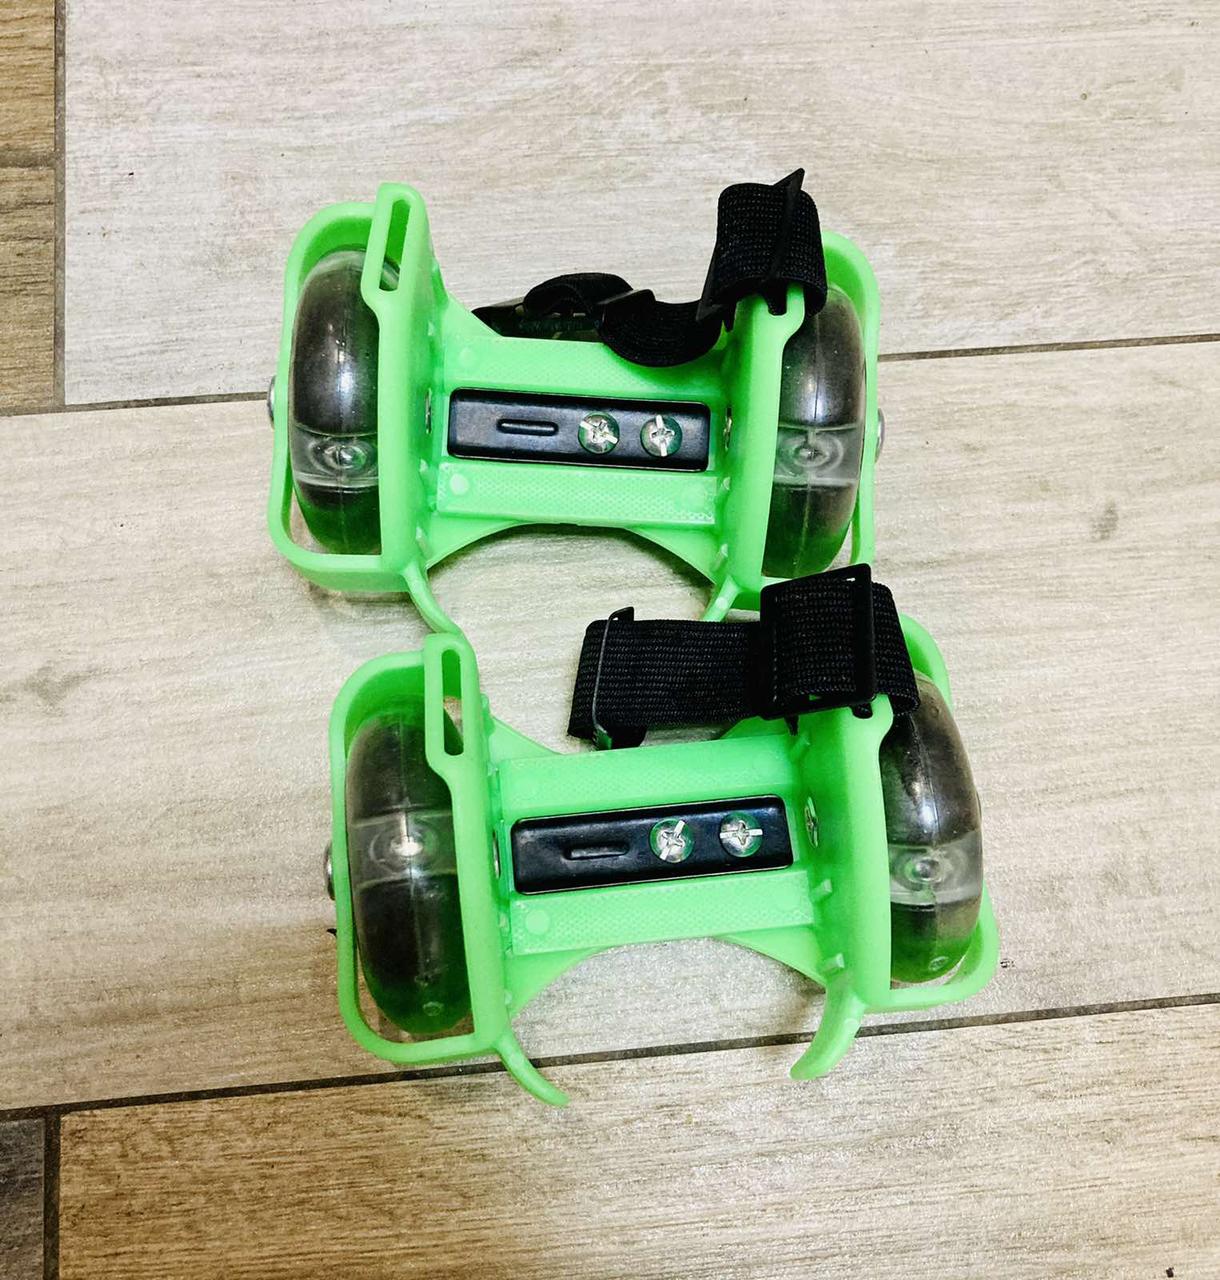 Мини-ролики раздвижные для обуви, светящиеся колеса, фото 1